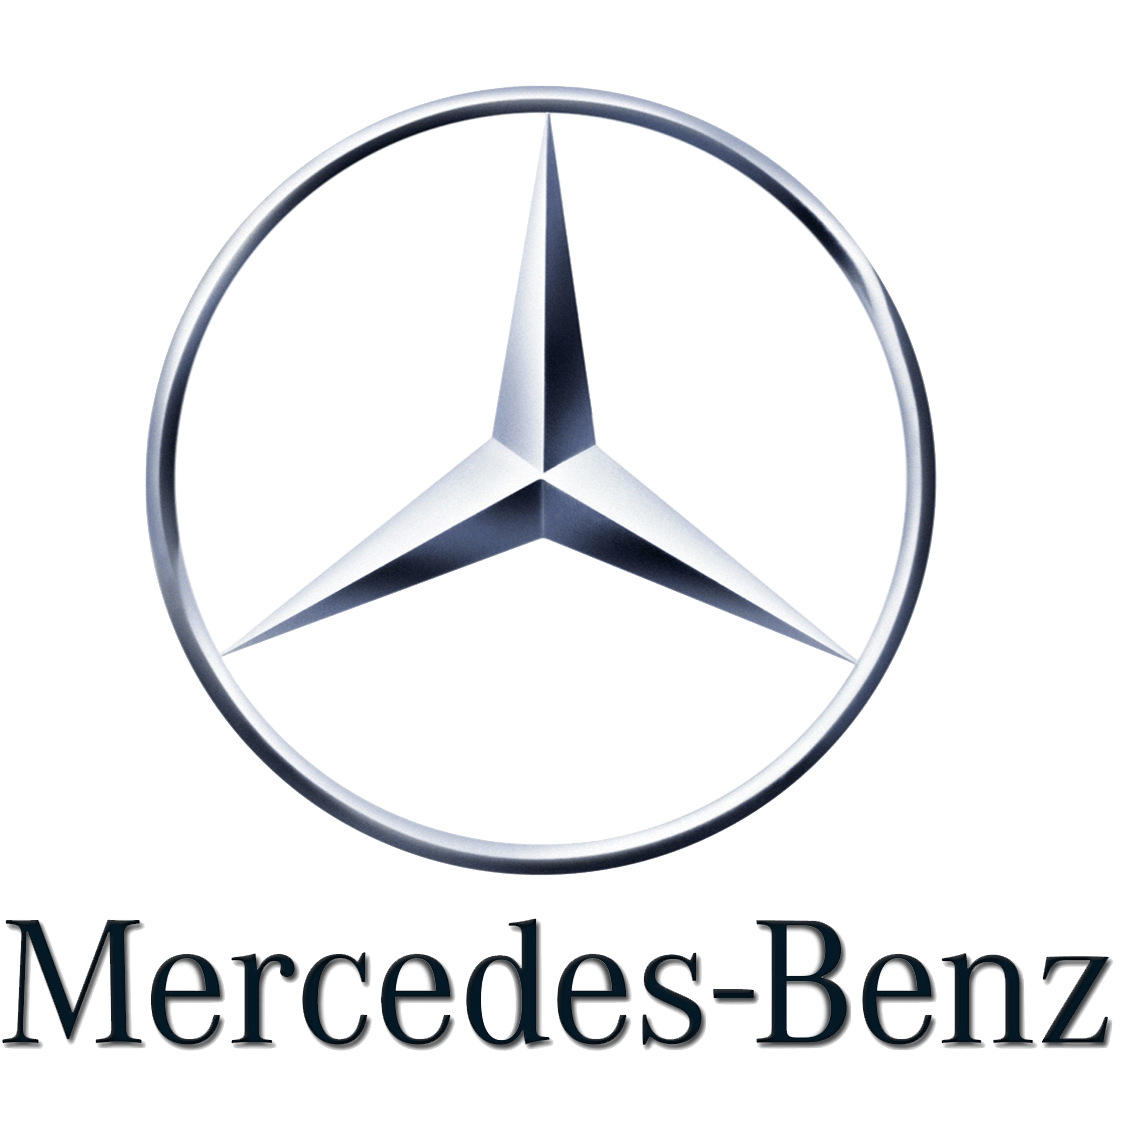 Benz Trucks Logo - National Brand Manager, Mercedes-Benz Trucks